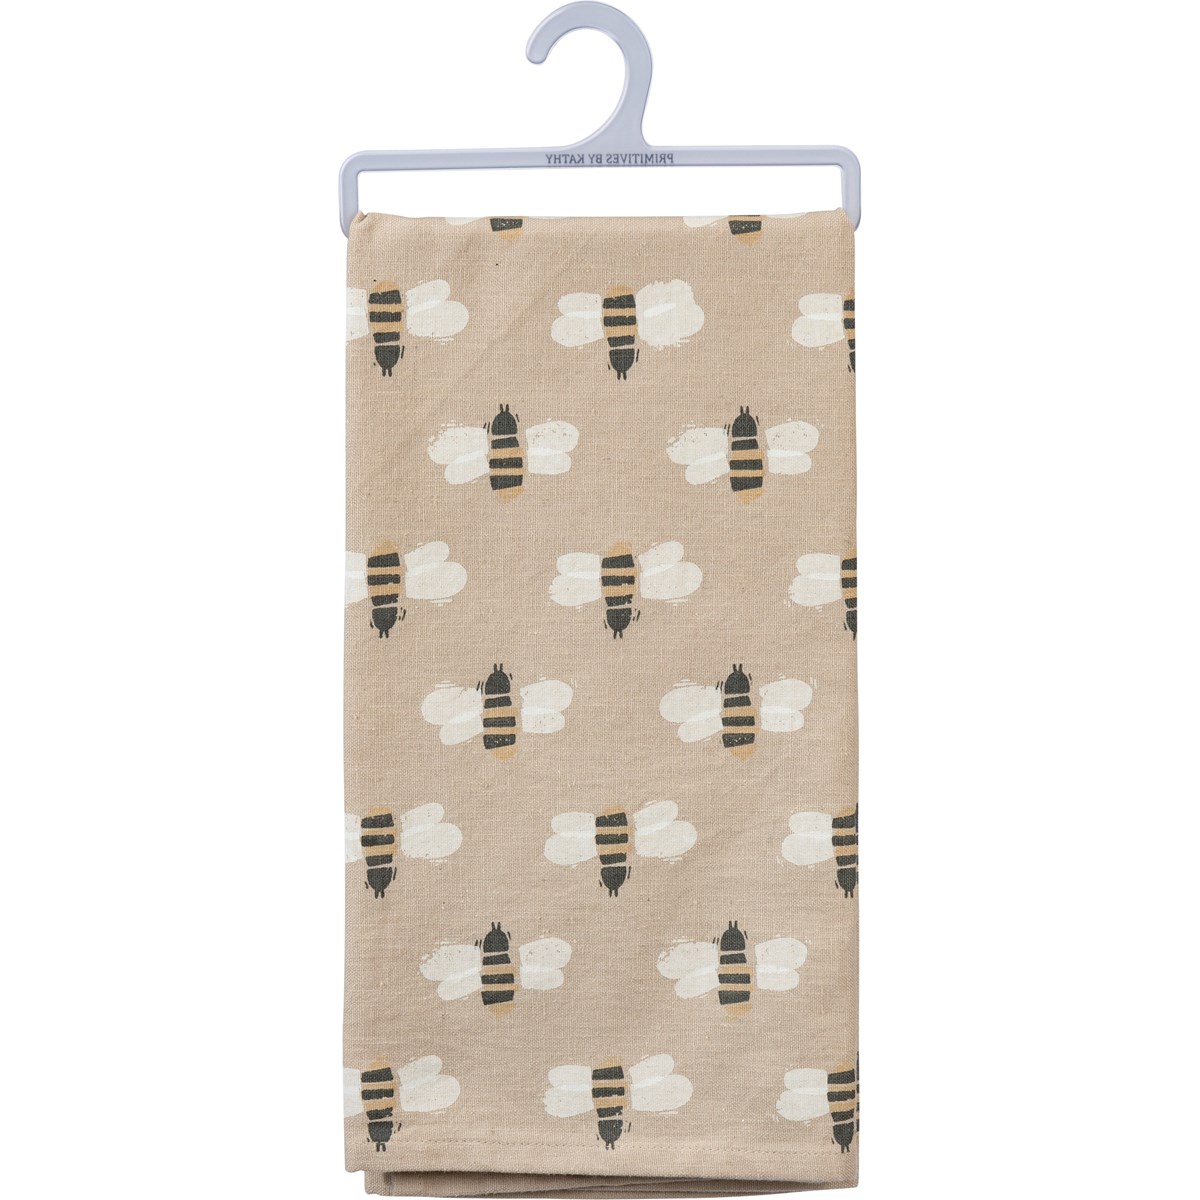 Kitchen Towel - Block Print Bee Happy - 20" x 26" - Cotton, Linen